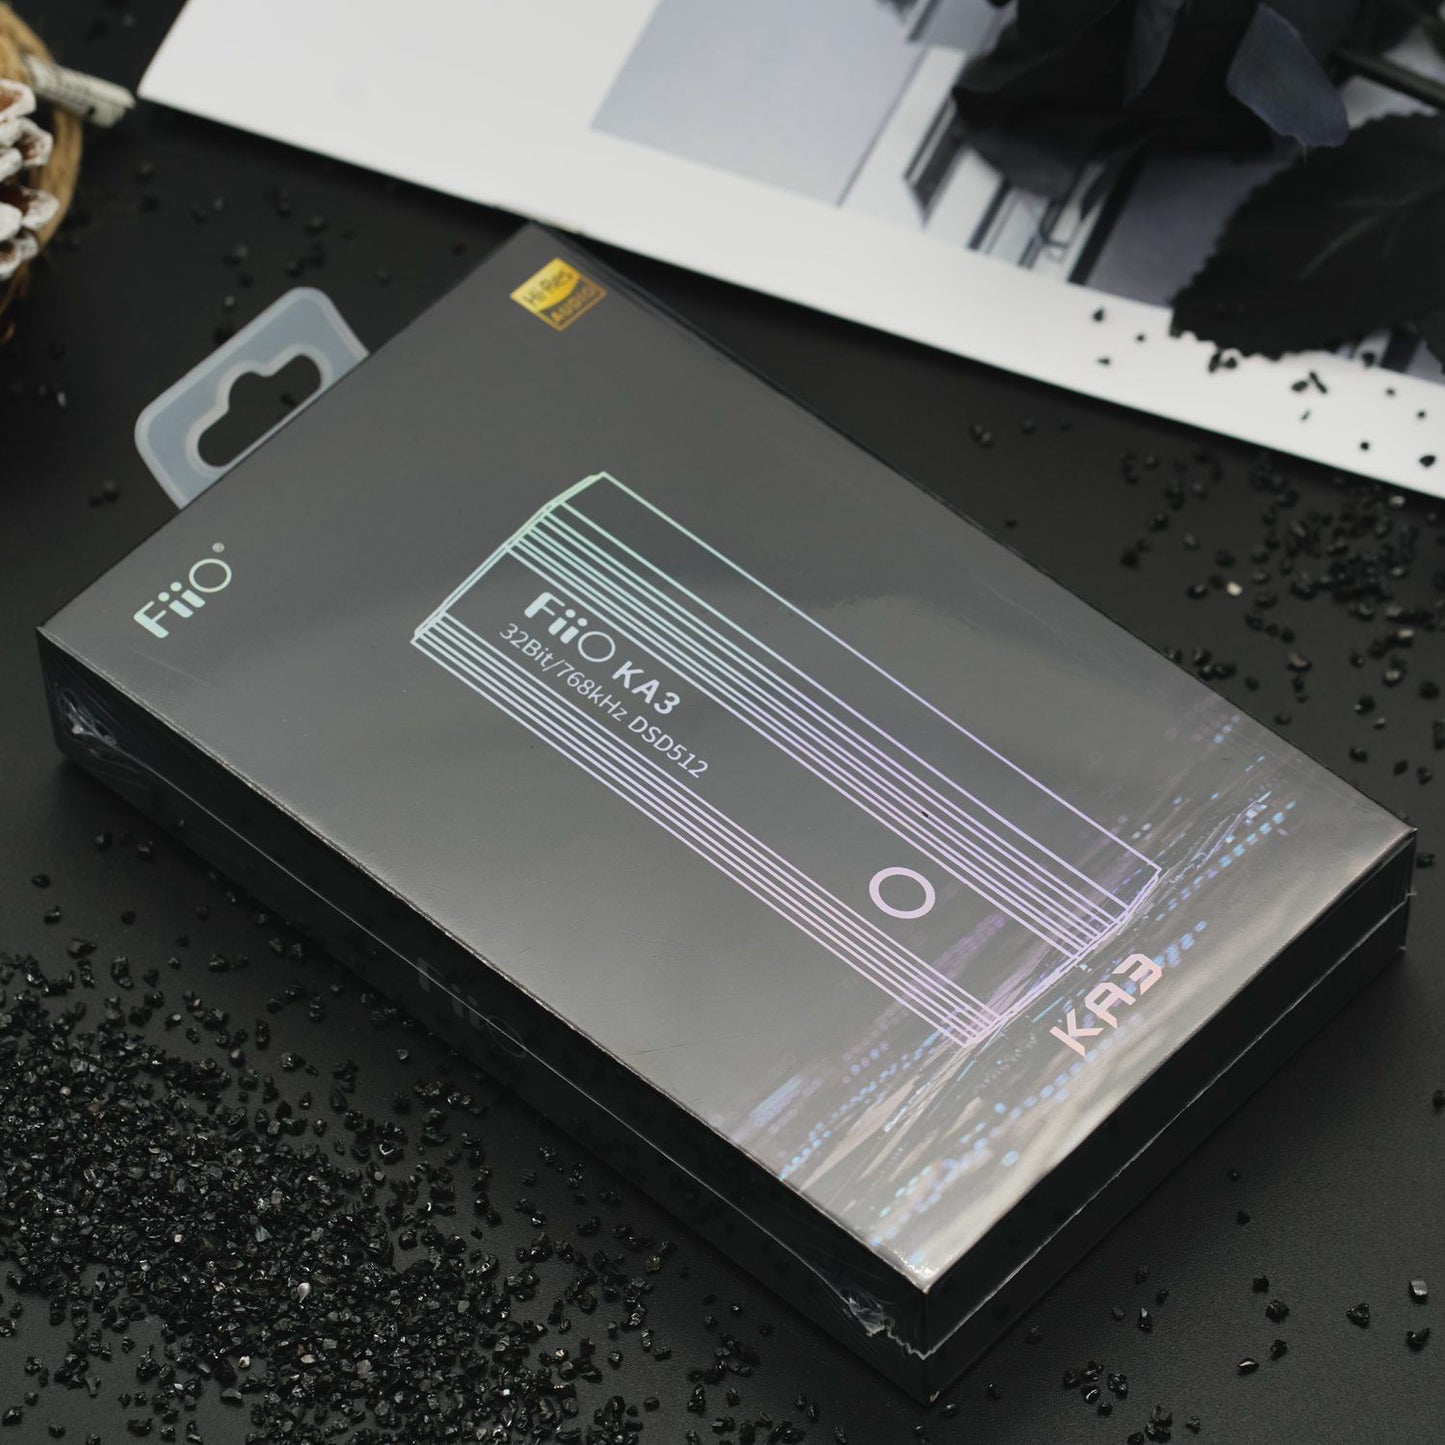 FiiO KA3 DSD512 Balanced Portable Headphone AMP